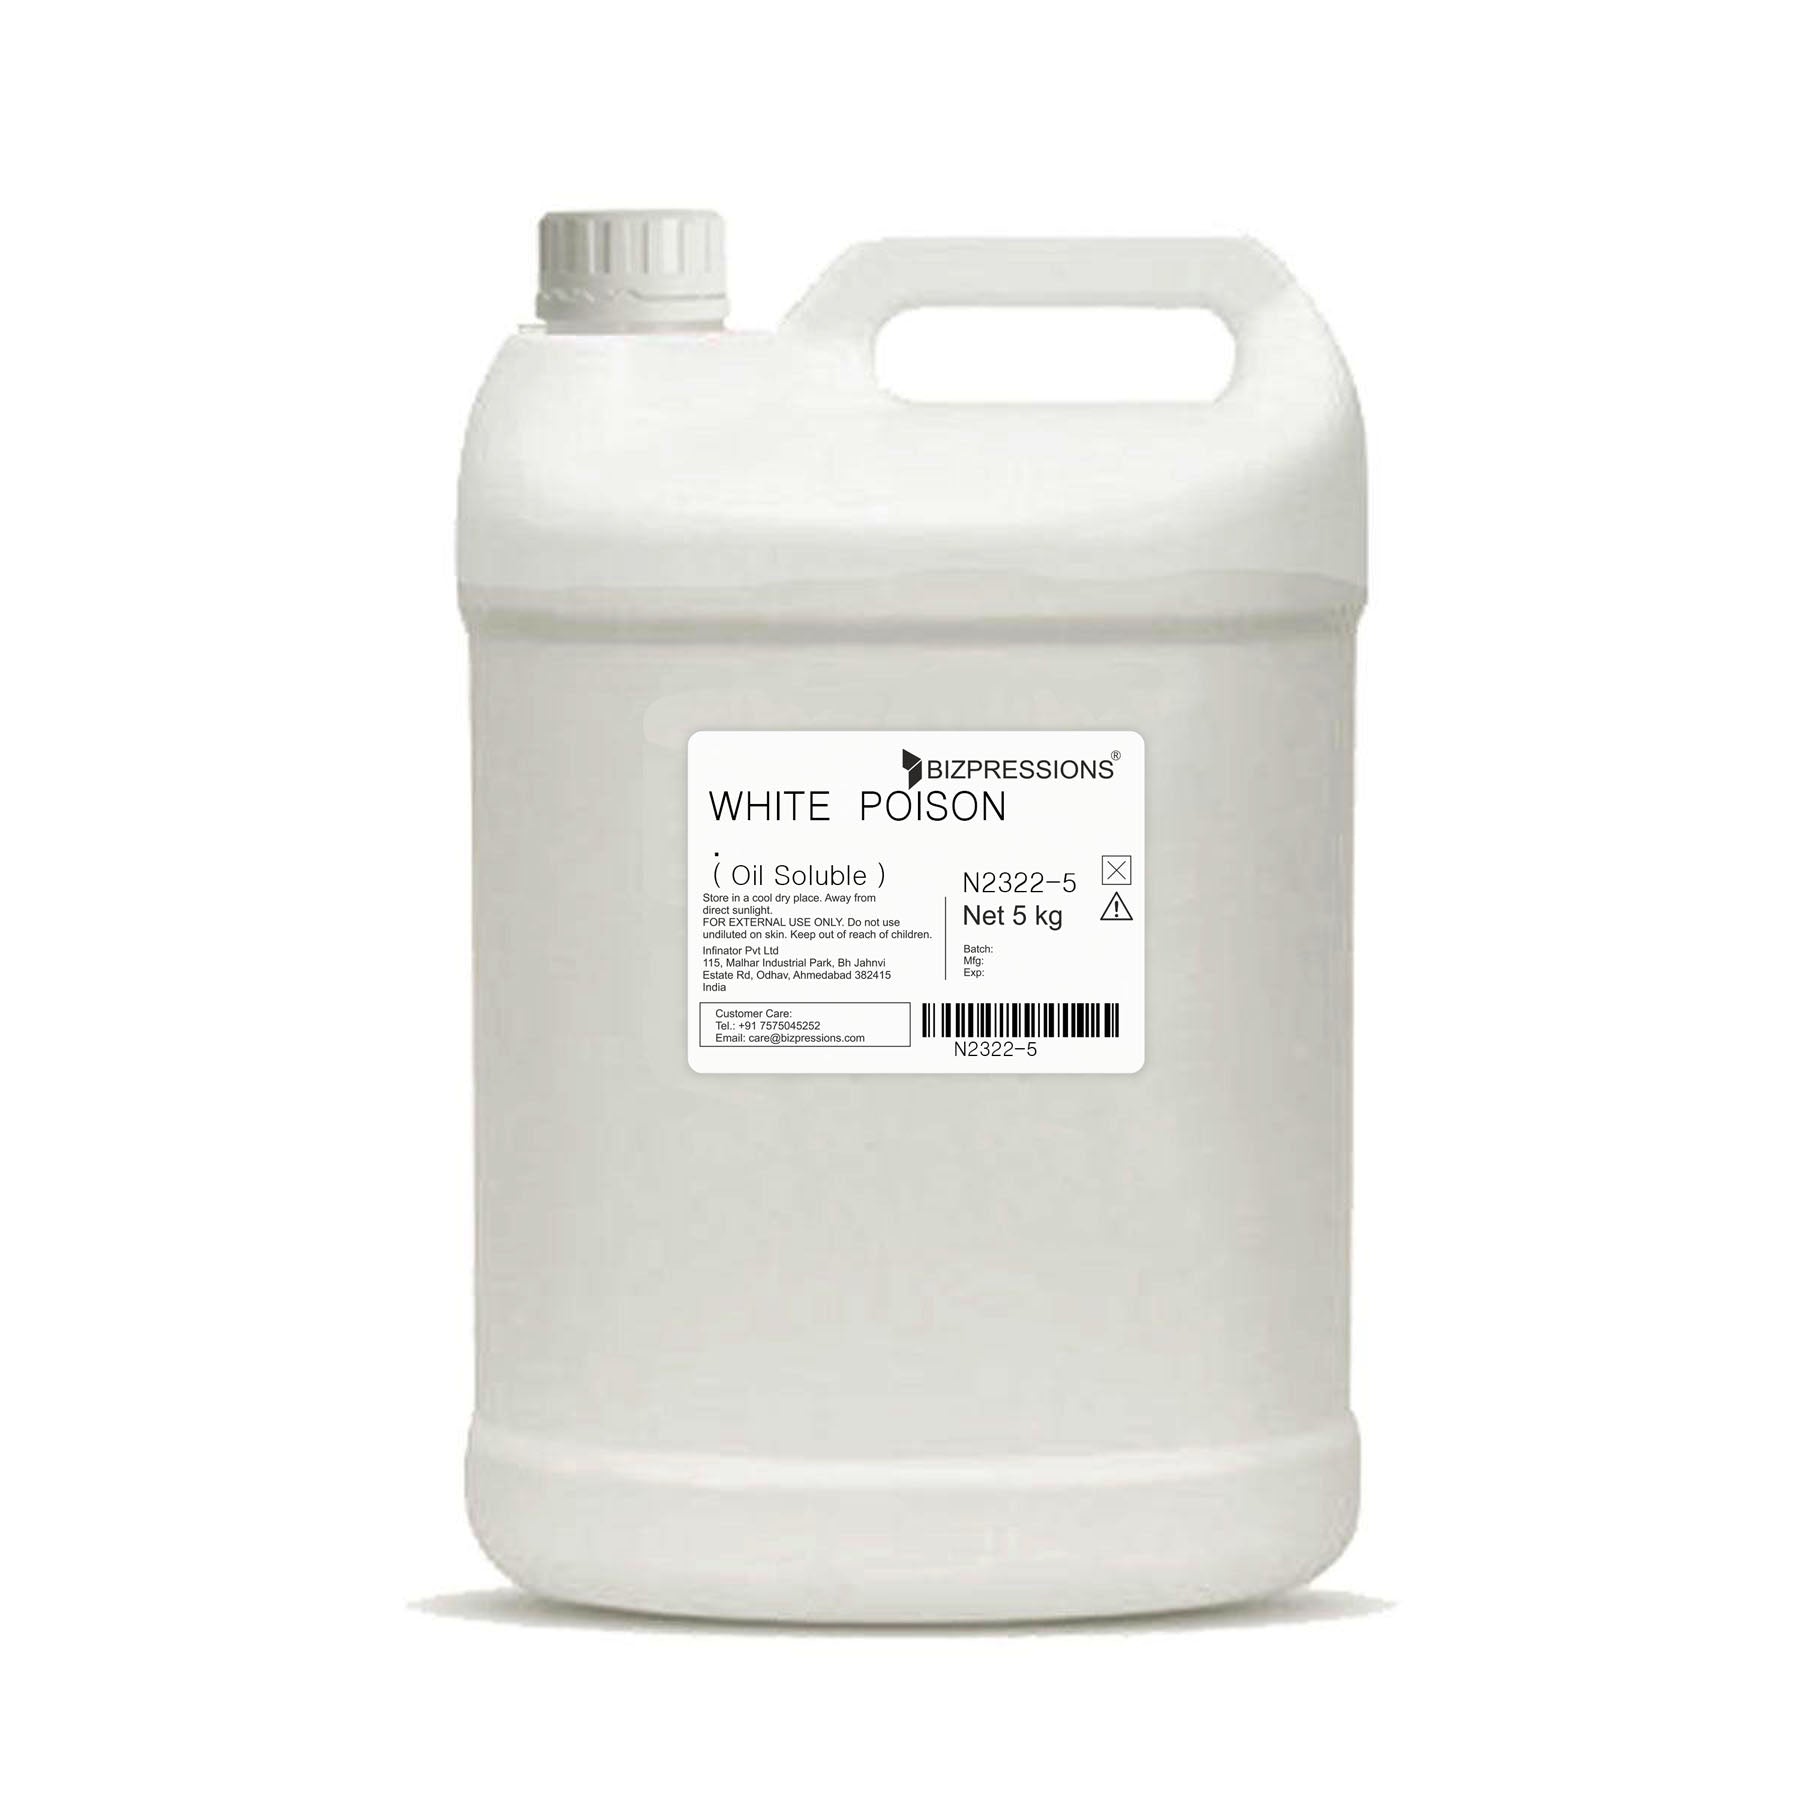 WHITE POISON - Fragrance ( Oil Soluble ) - 5 kg